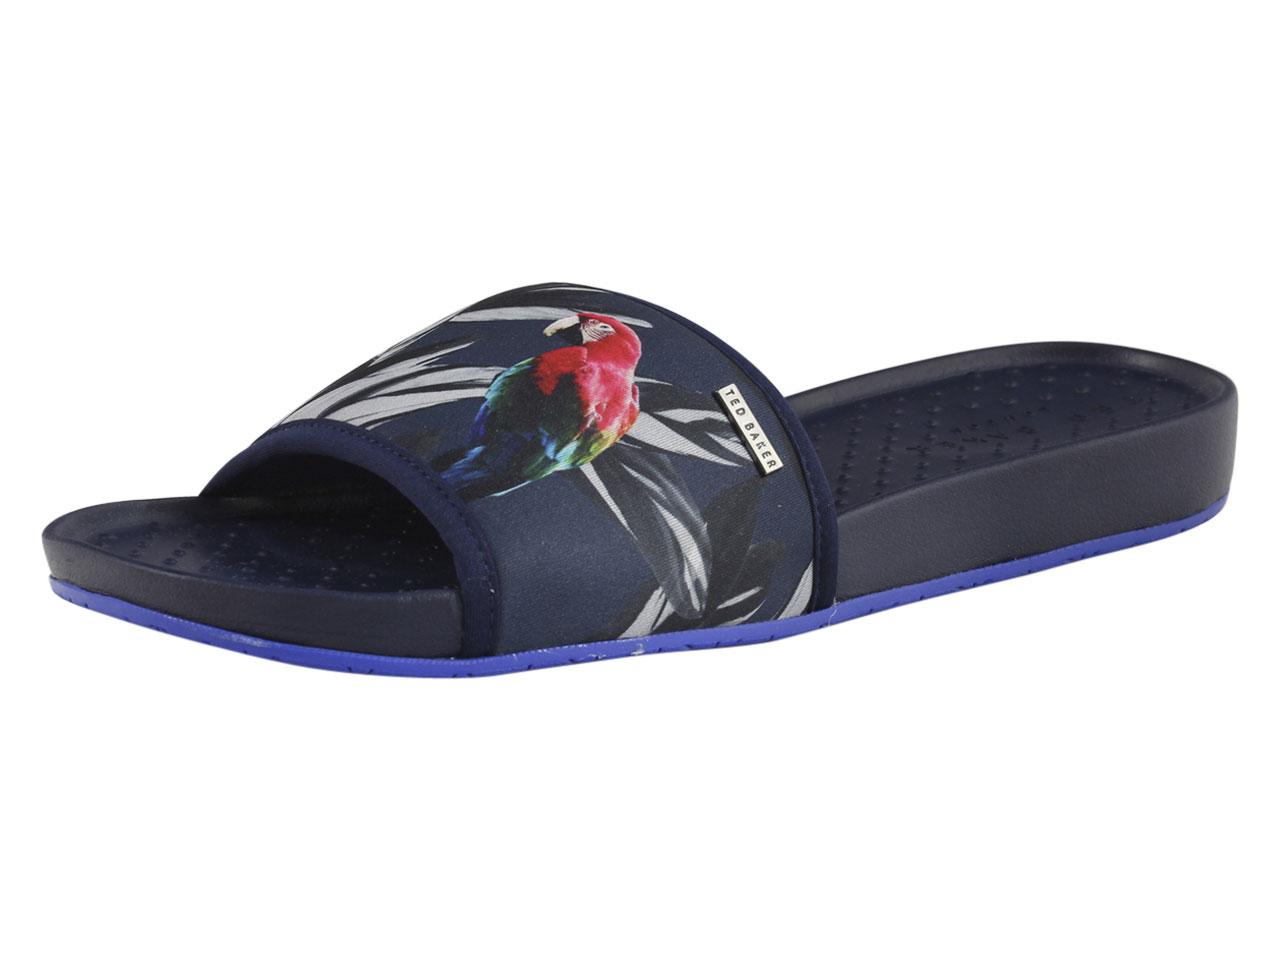 Ted Baker Men's Sauldi Slides Sandals Shoes - Blue - 12 D(M) US